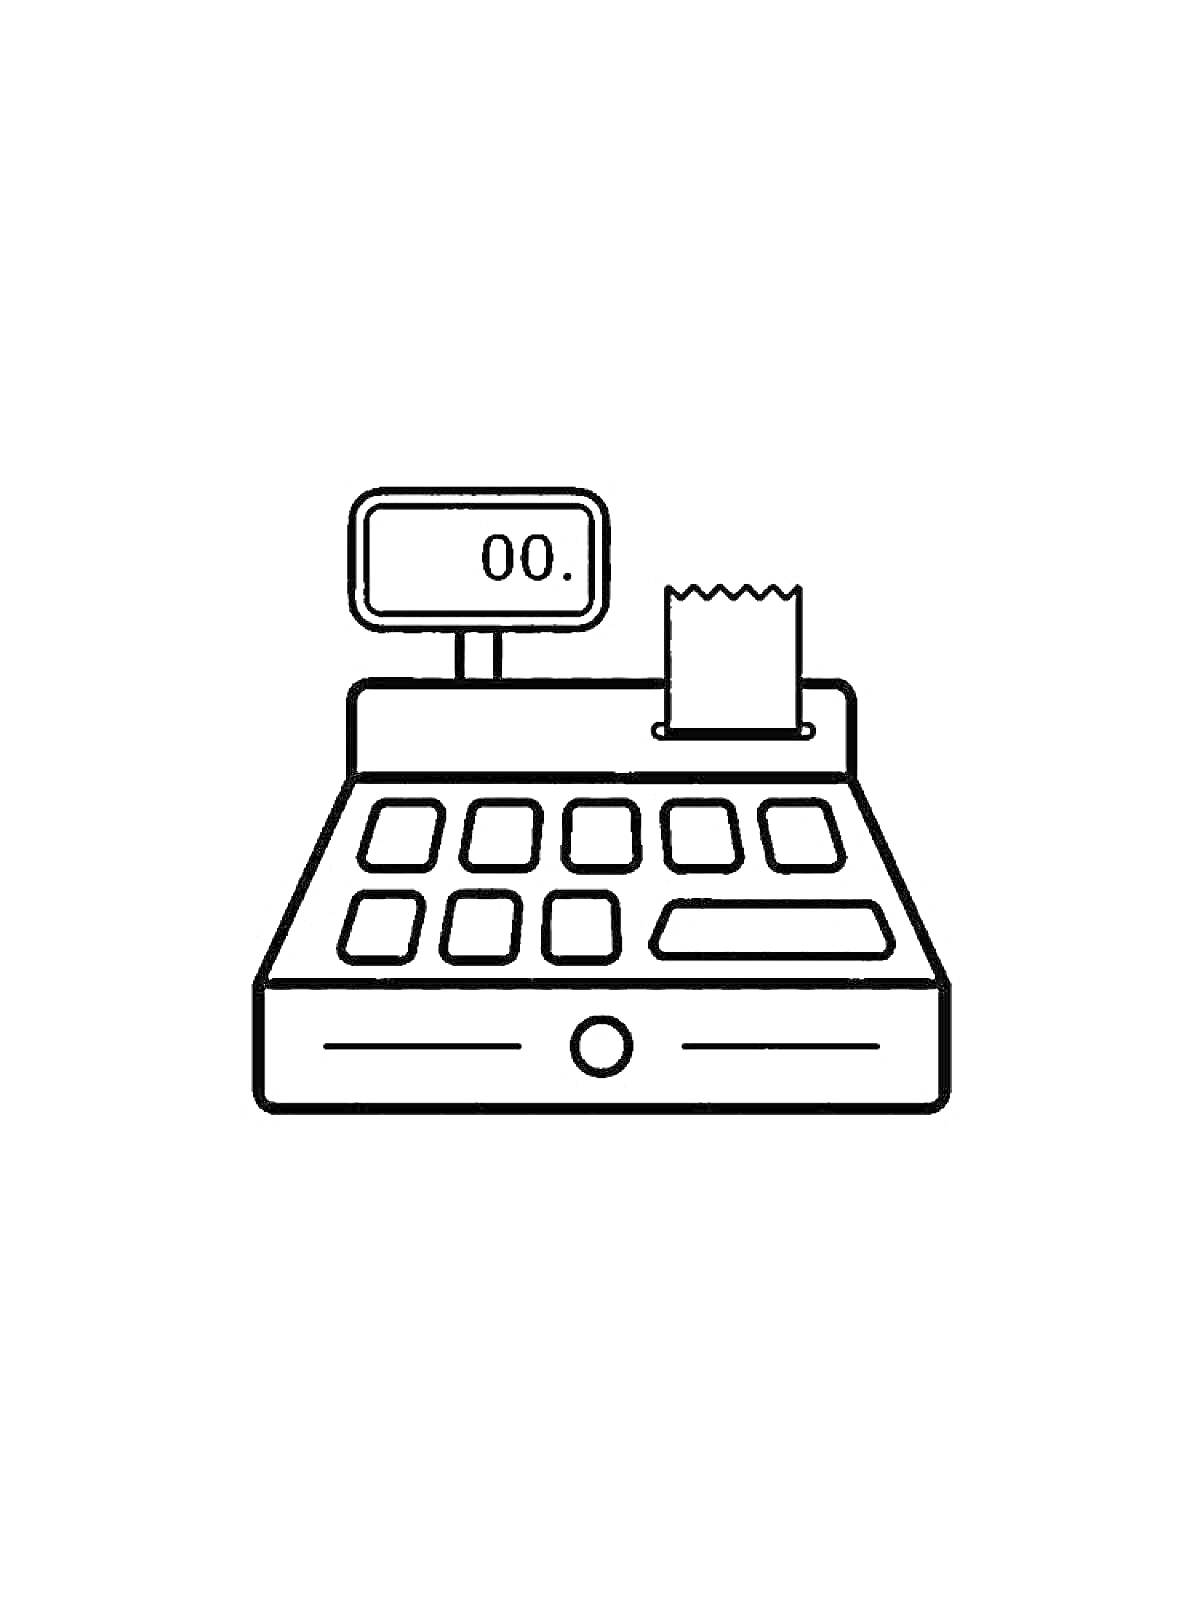 Раскраска Кассовый аппарат с экраном, кнопками и чеком